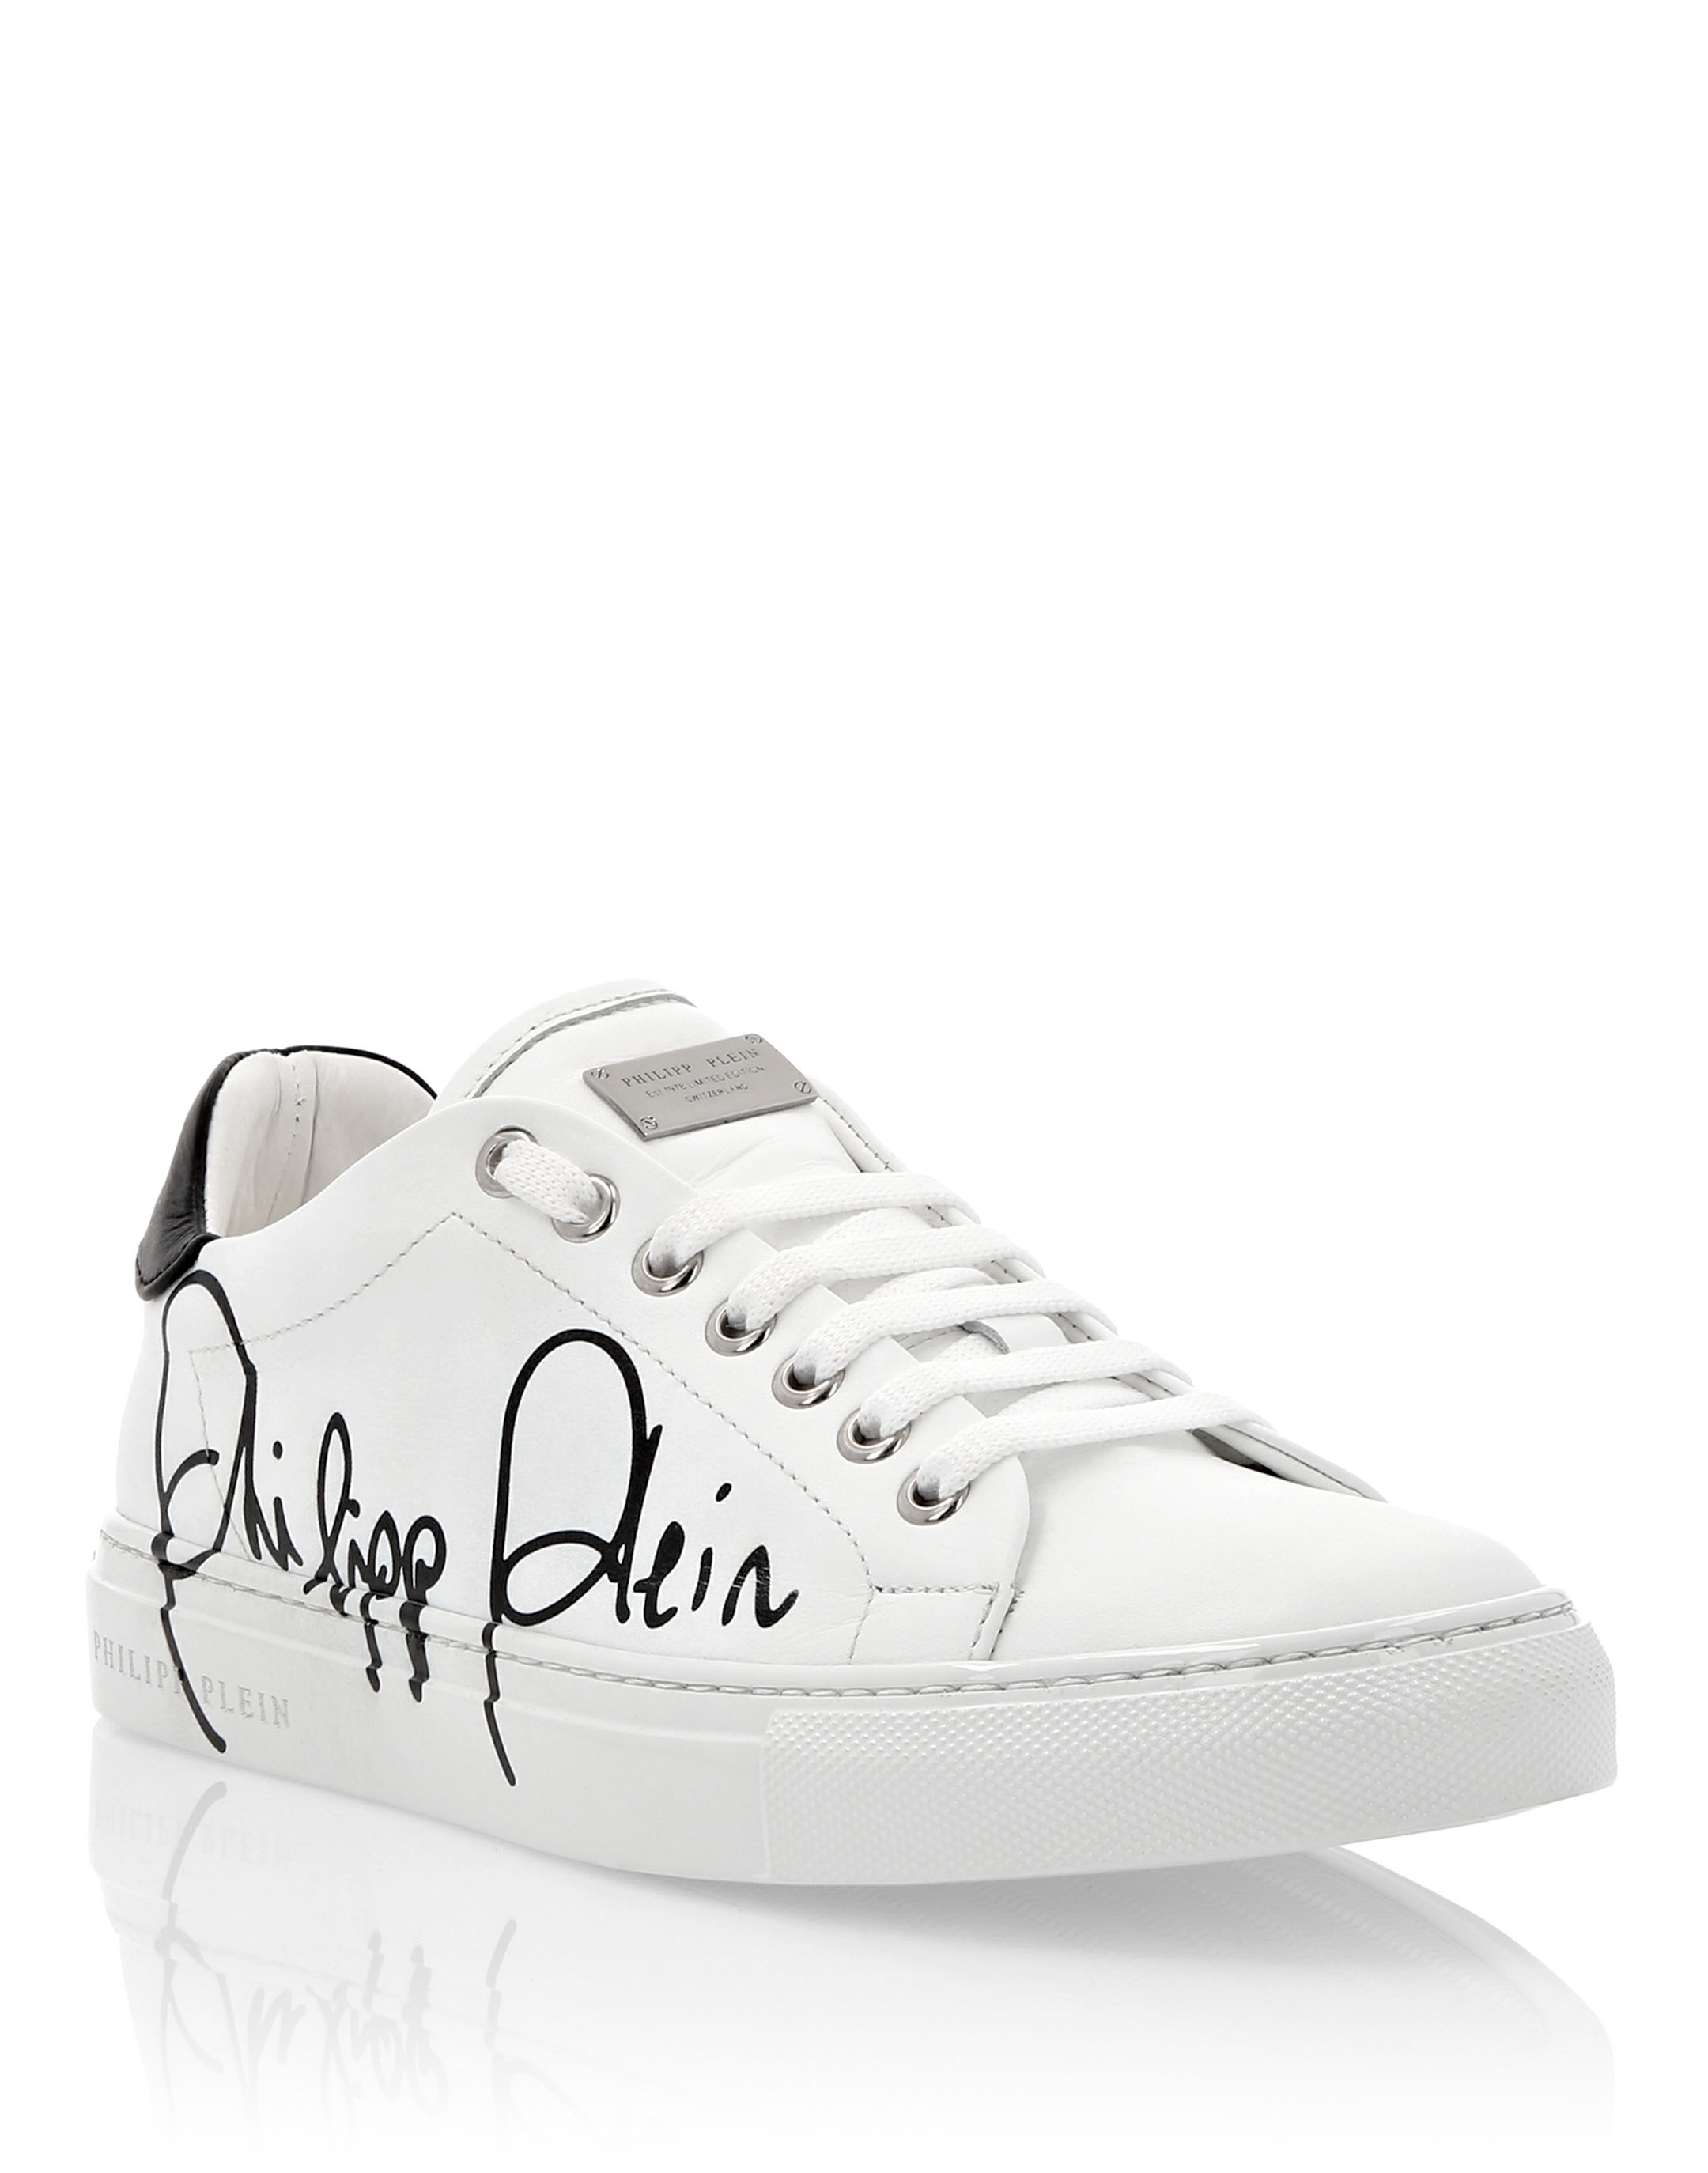 Lo-Top Sneakers Signature | Philipp Plein